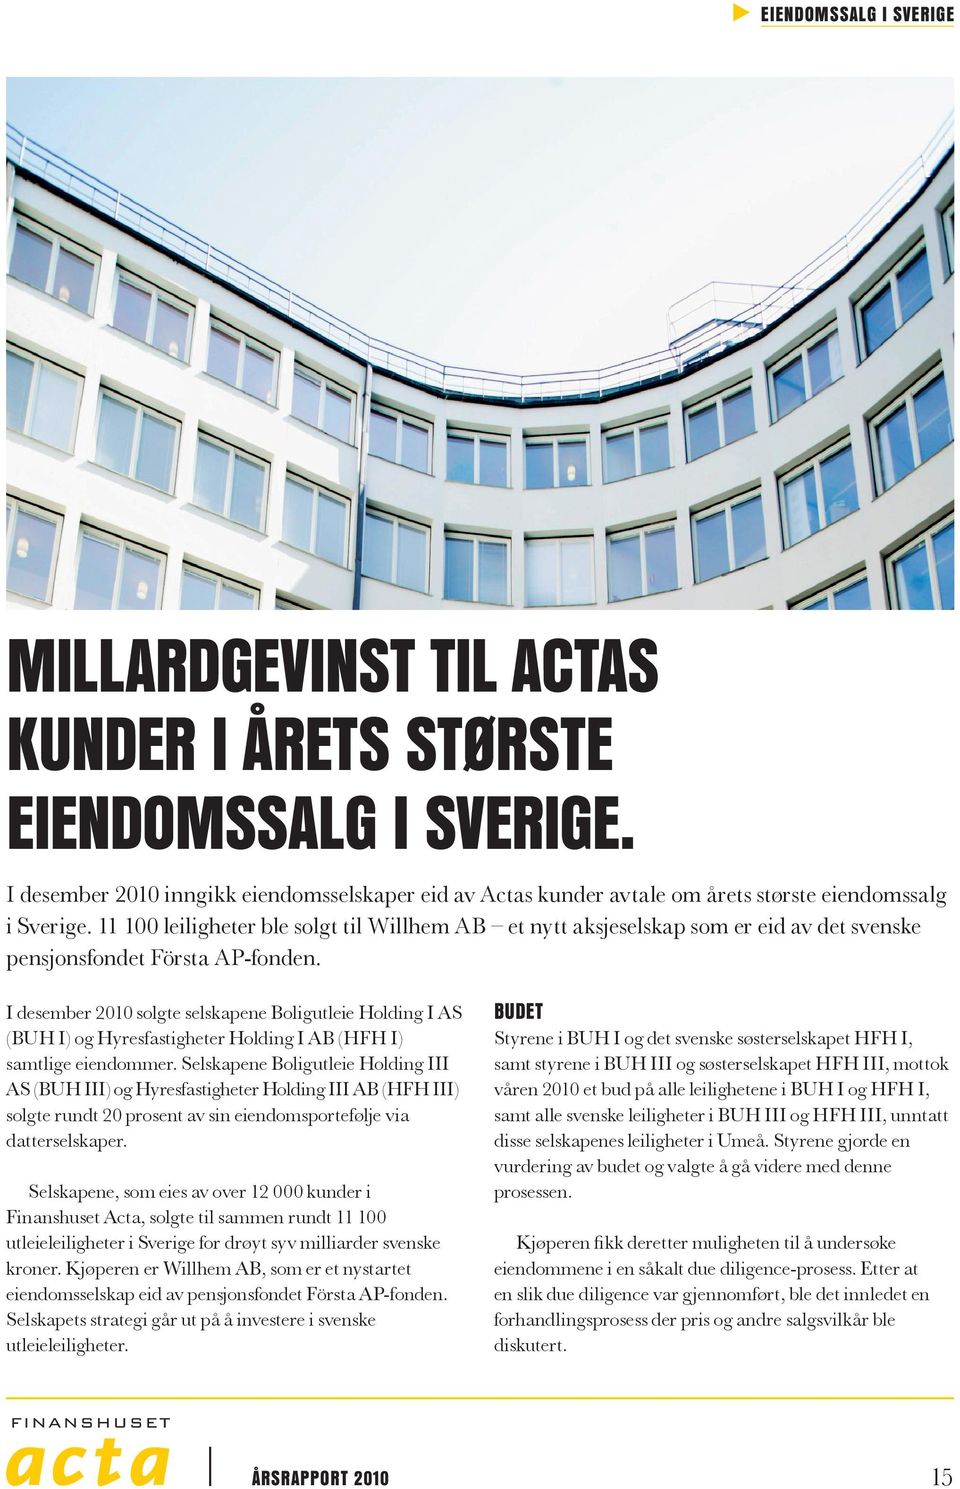 11 1 leiligheter ble solgt til Willhem AB et nytt aksjeselskap som er eid av det svenske pensjonsfondet Första AP-fonden.